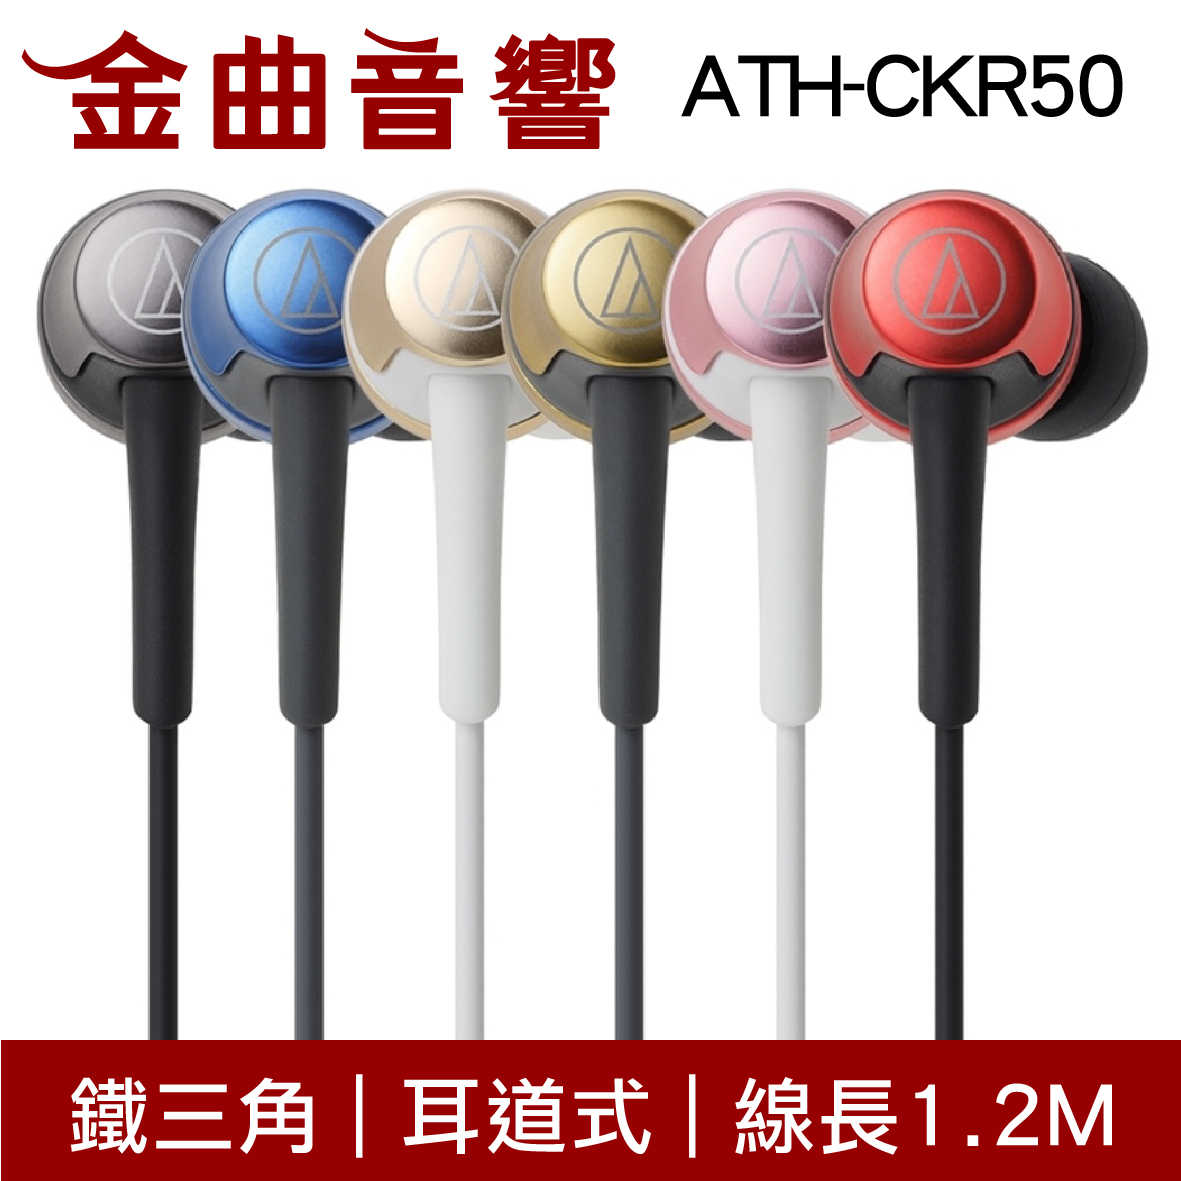 鐵三角 ATH-CKR50 粉色 耳道式耳機 | 金曲音響